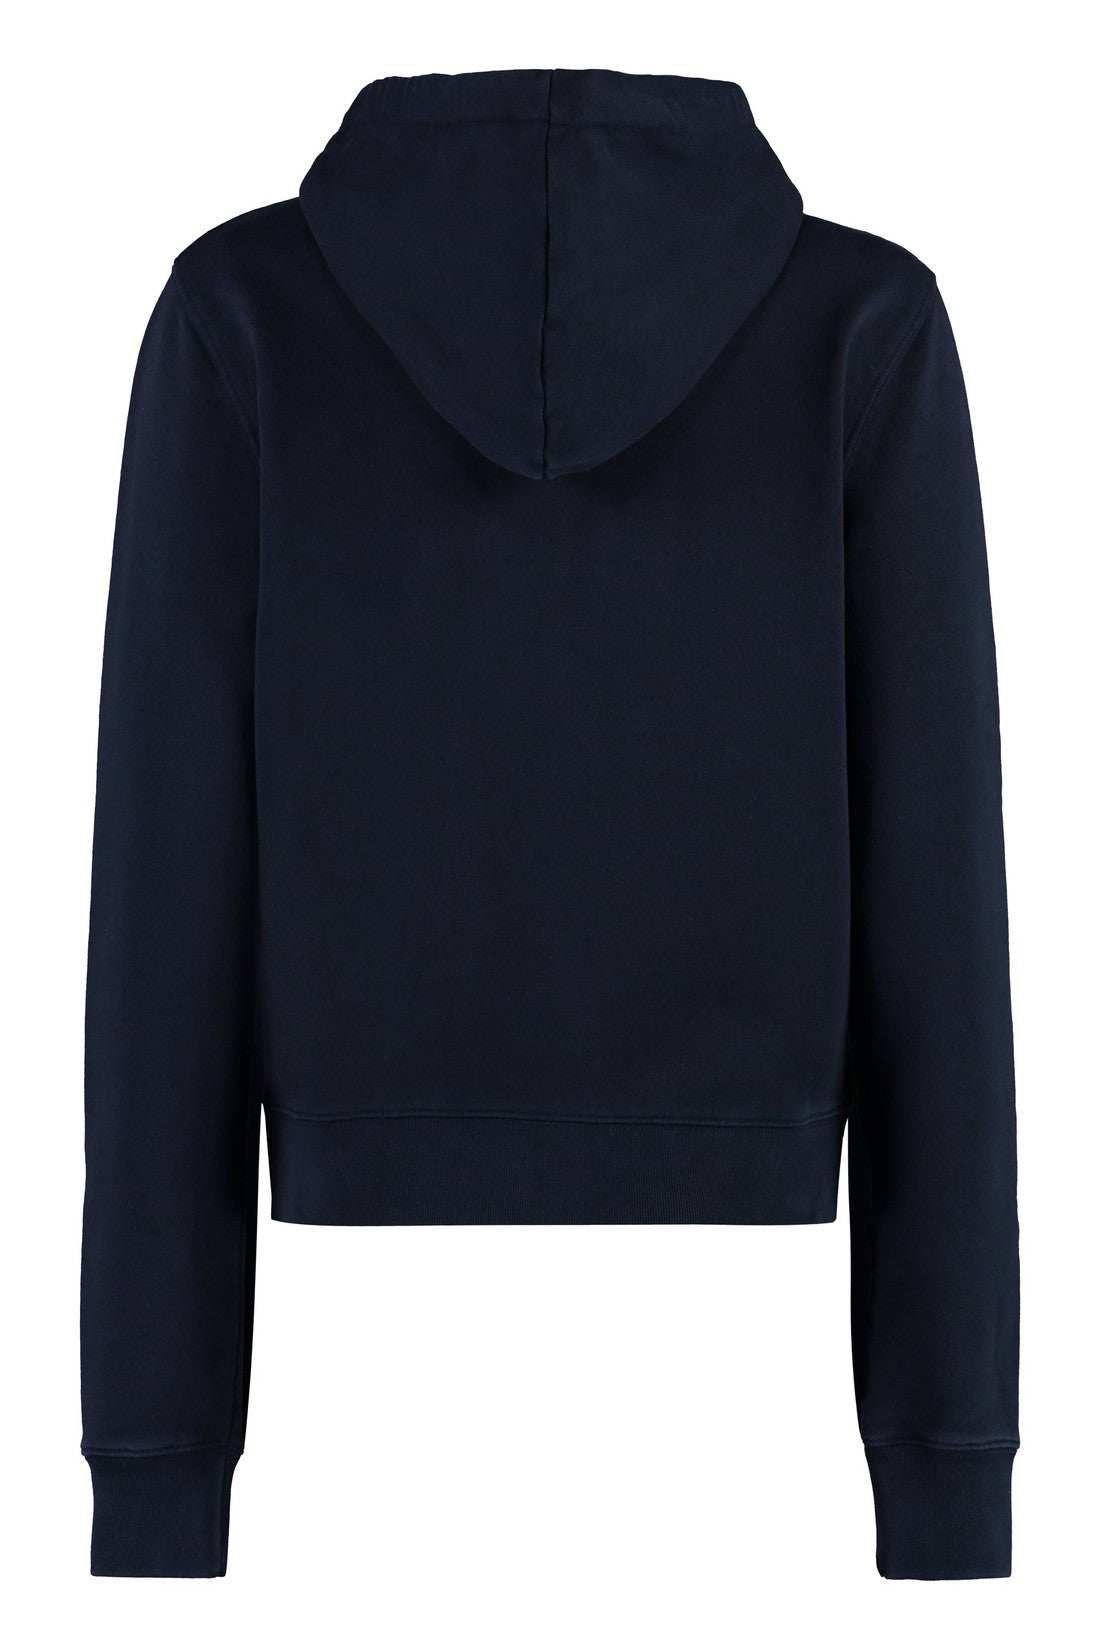 Maison Kitsuné-OUTLET-SALE-Full zip hoodie-ARCHIVIST